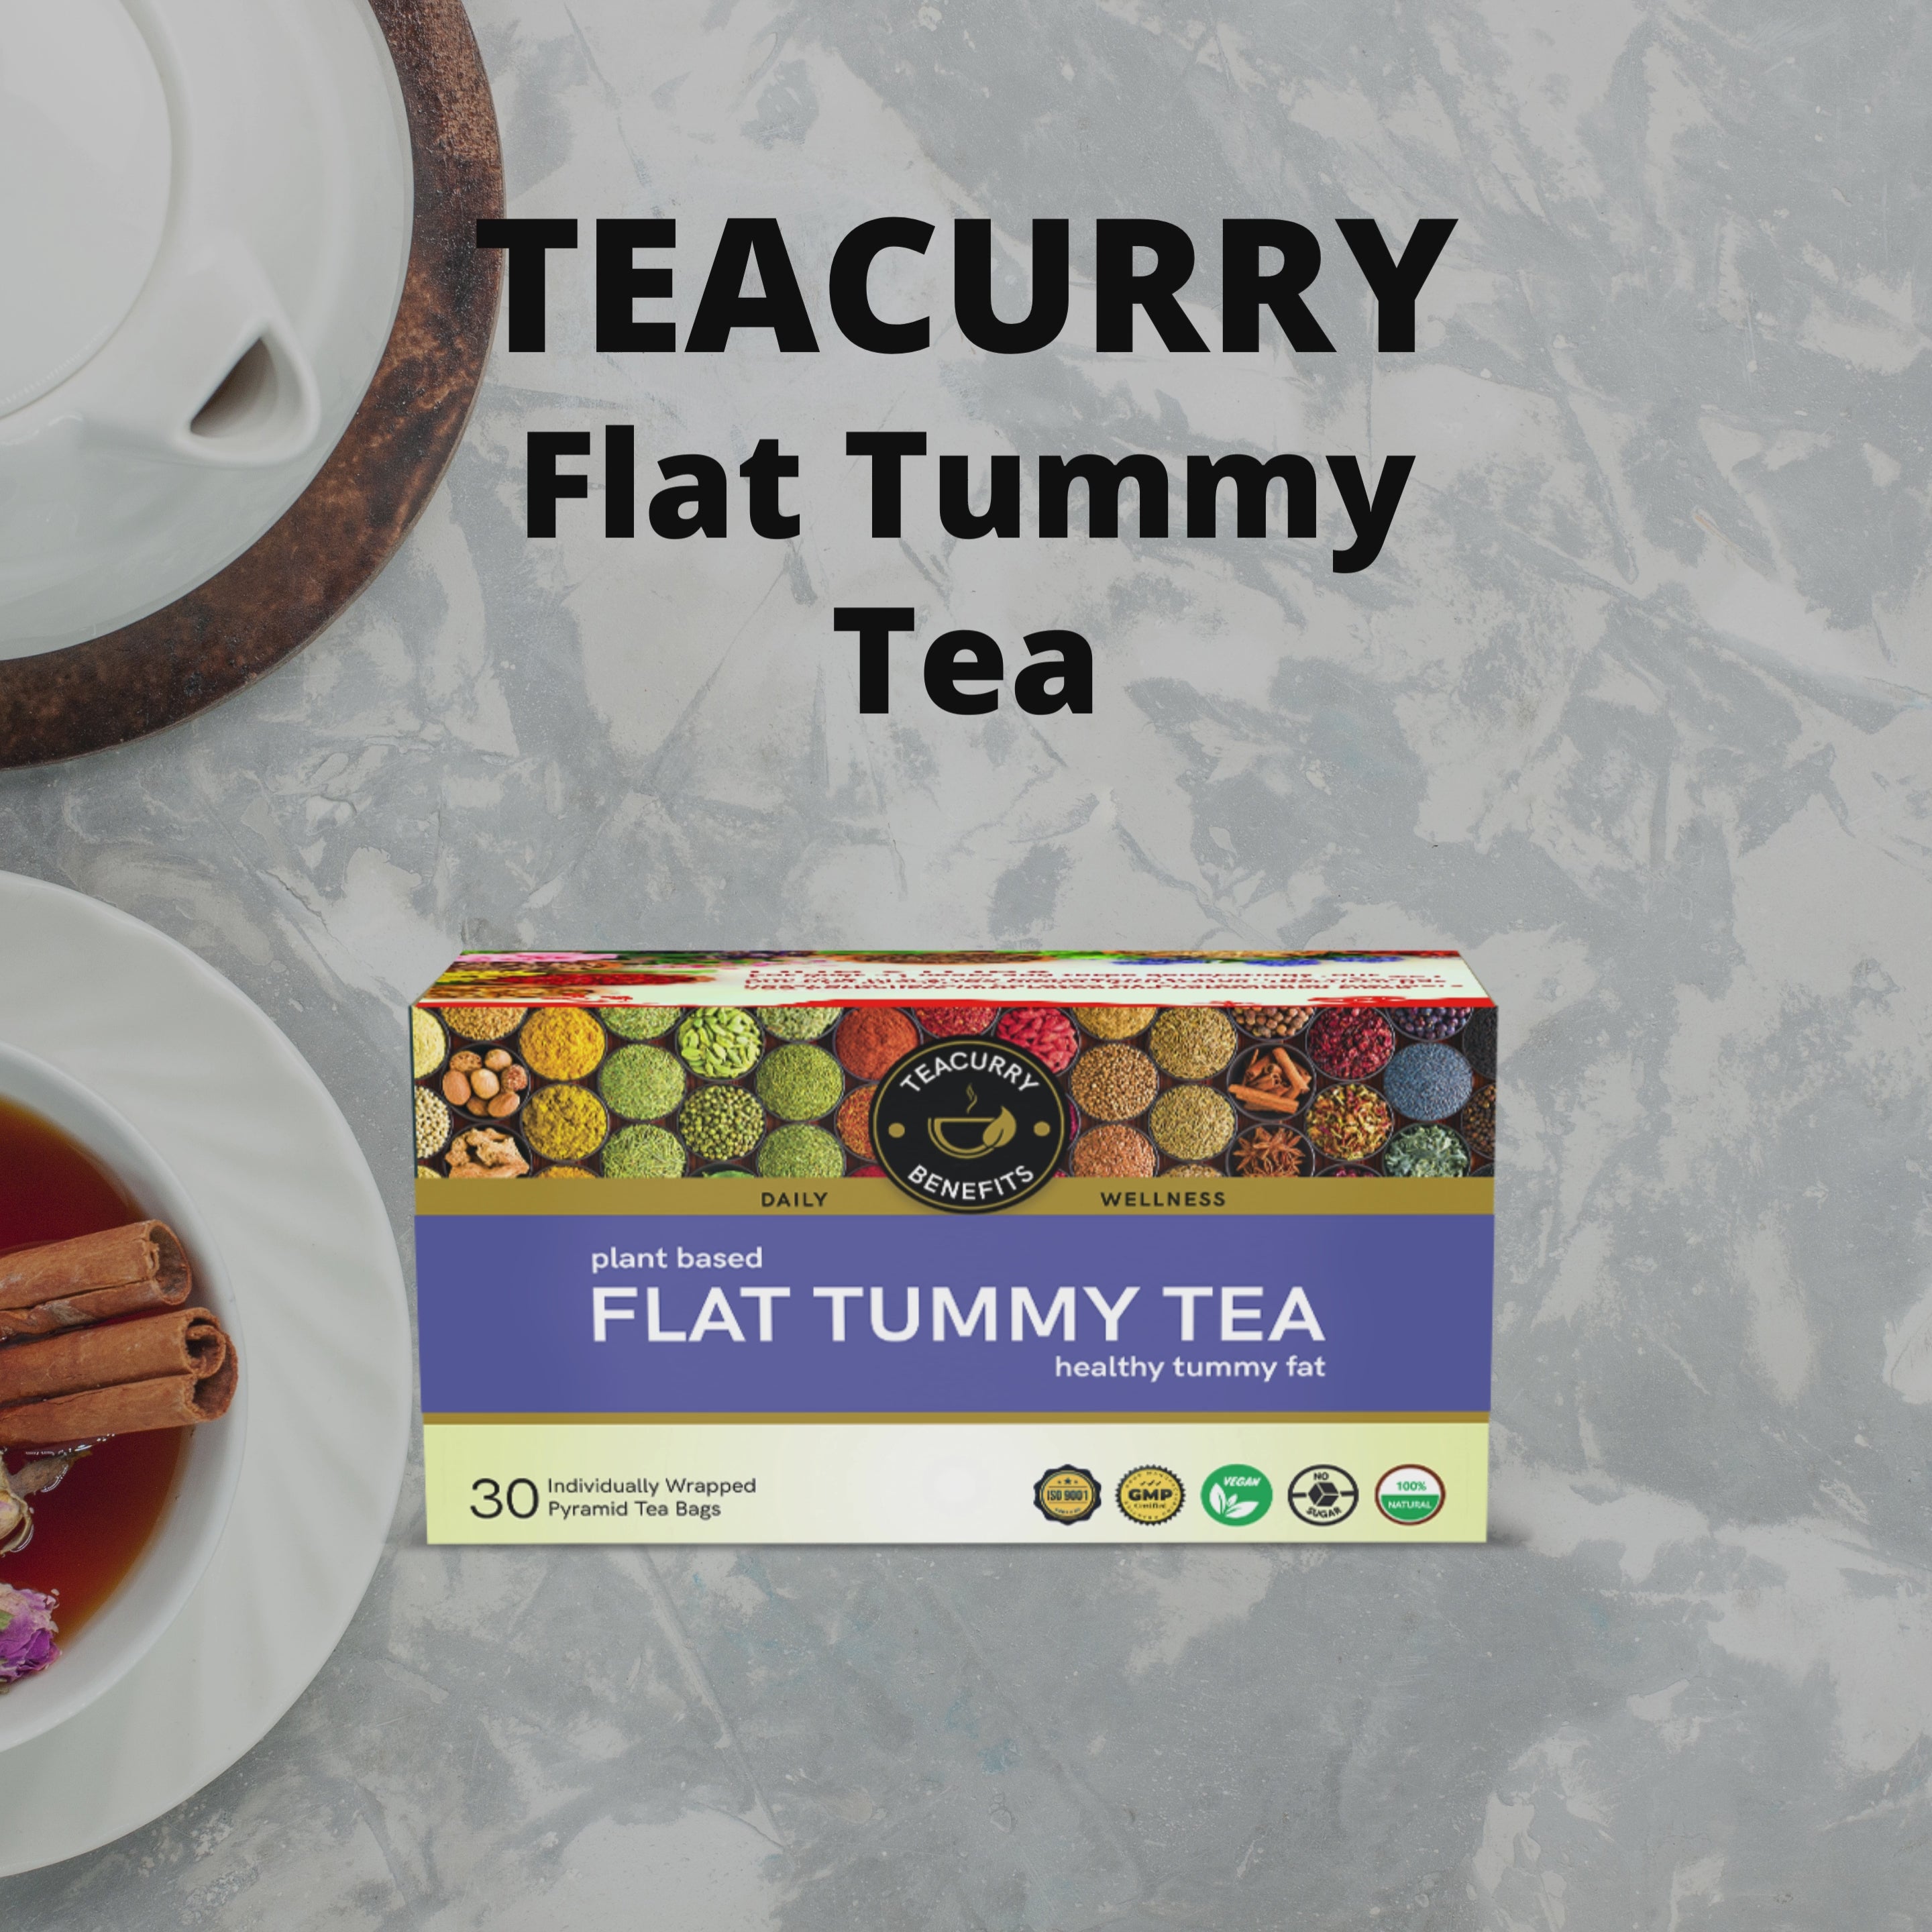 Teacurry Flat Tummy Tea Video